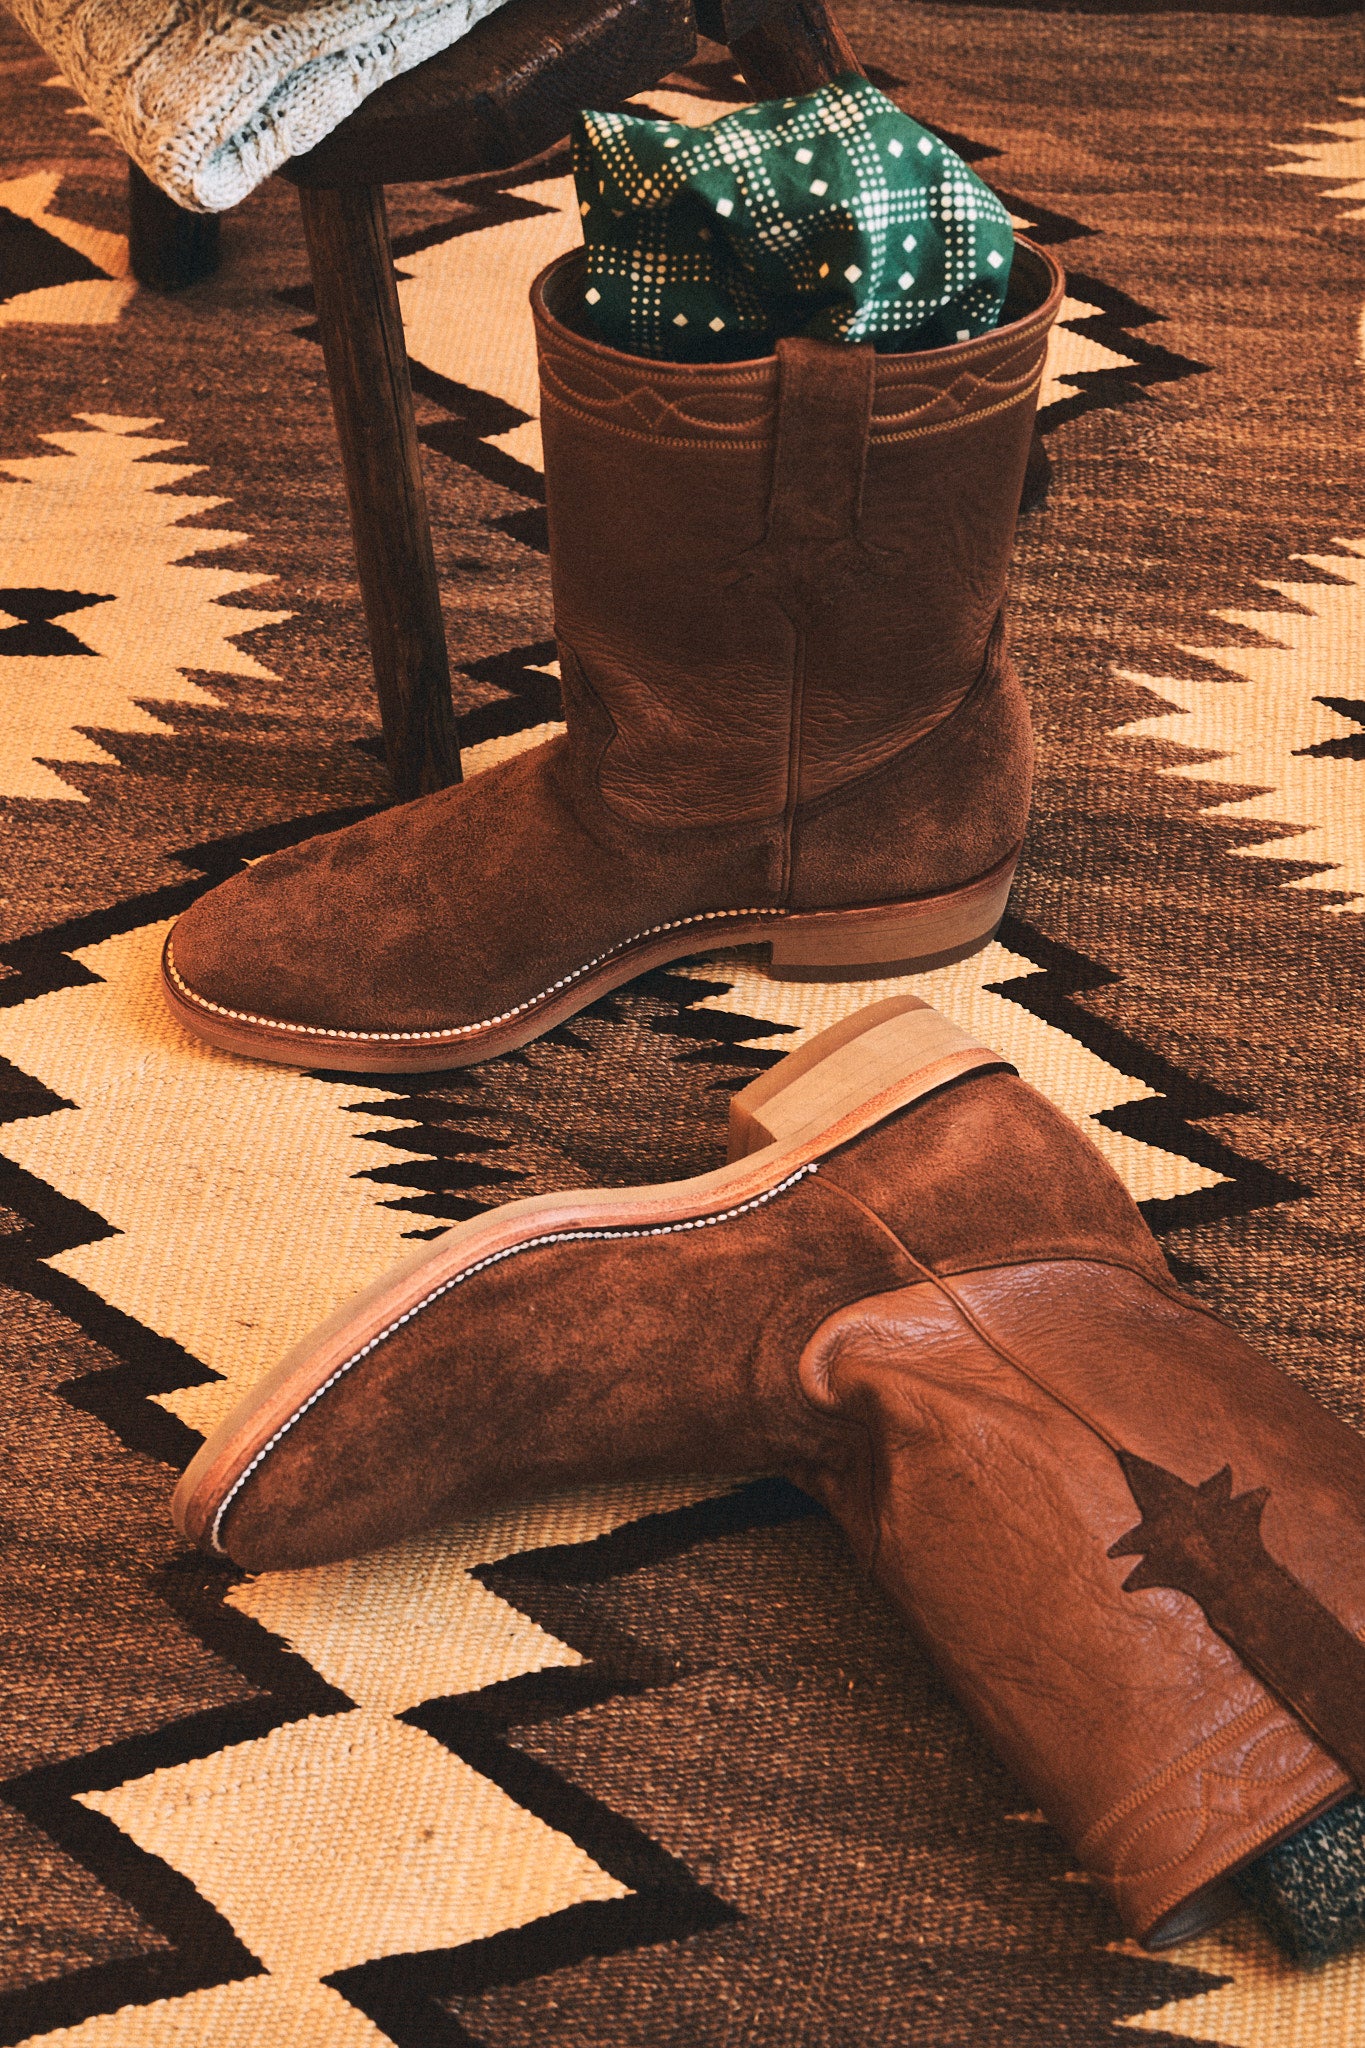 Ranchero Roper Boots